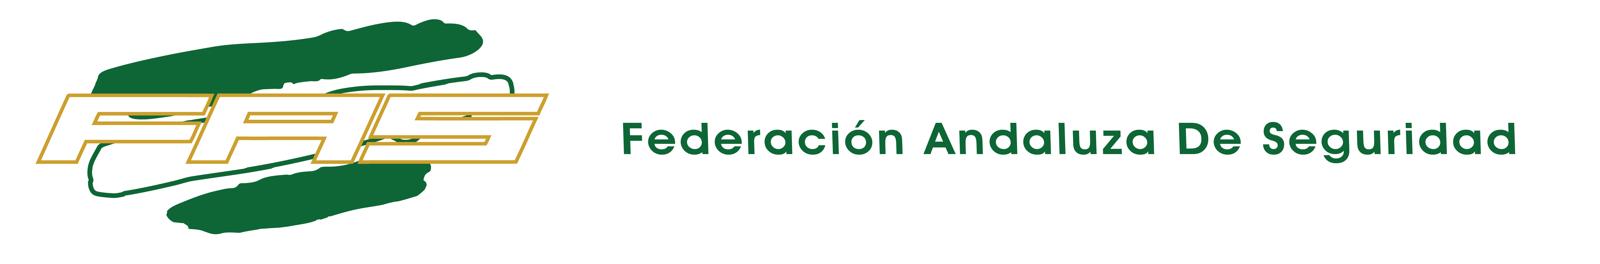 FAS - Federación Andaluza de Seguridad